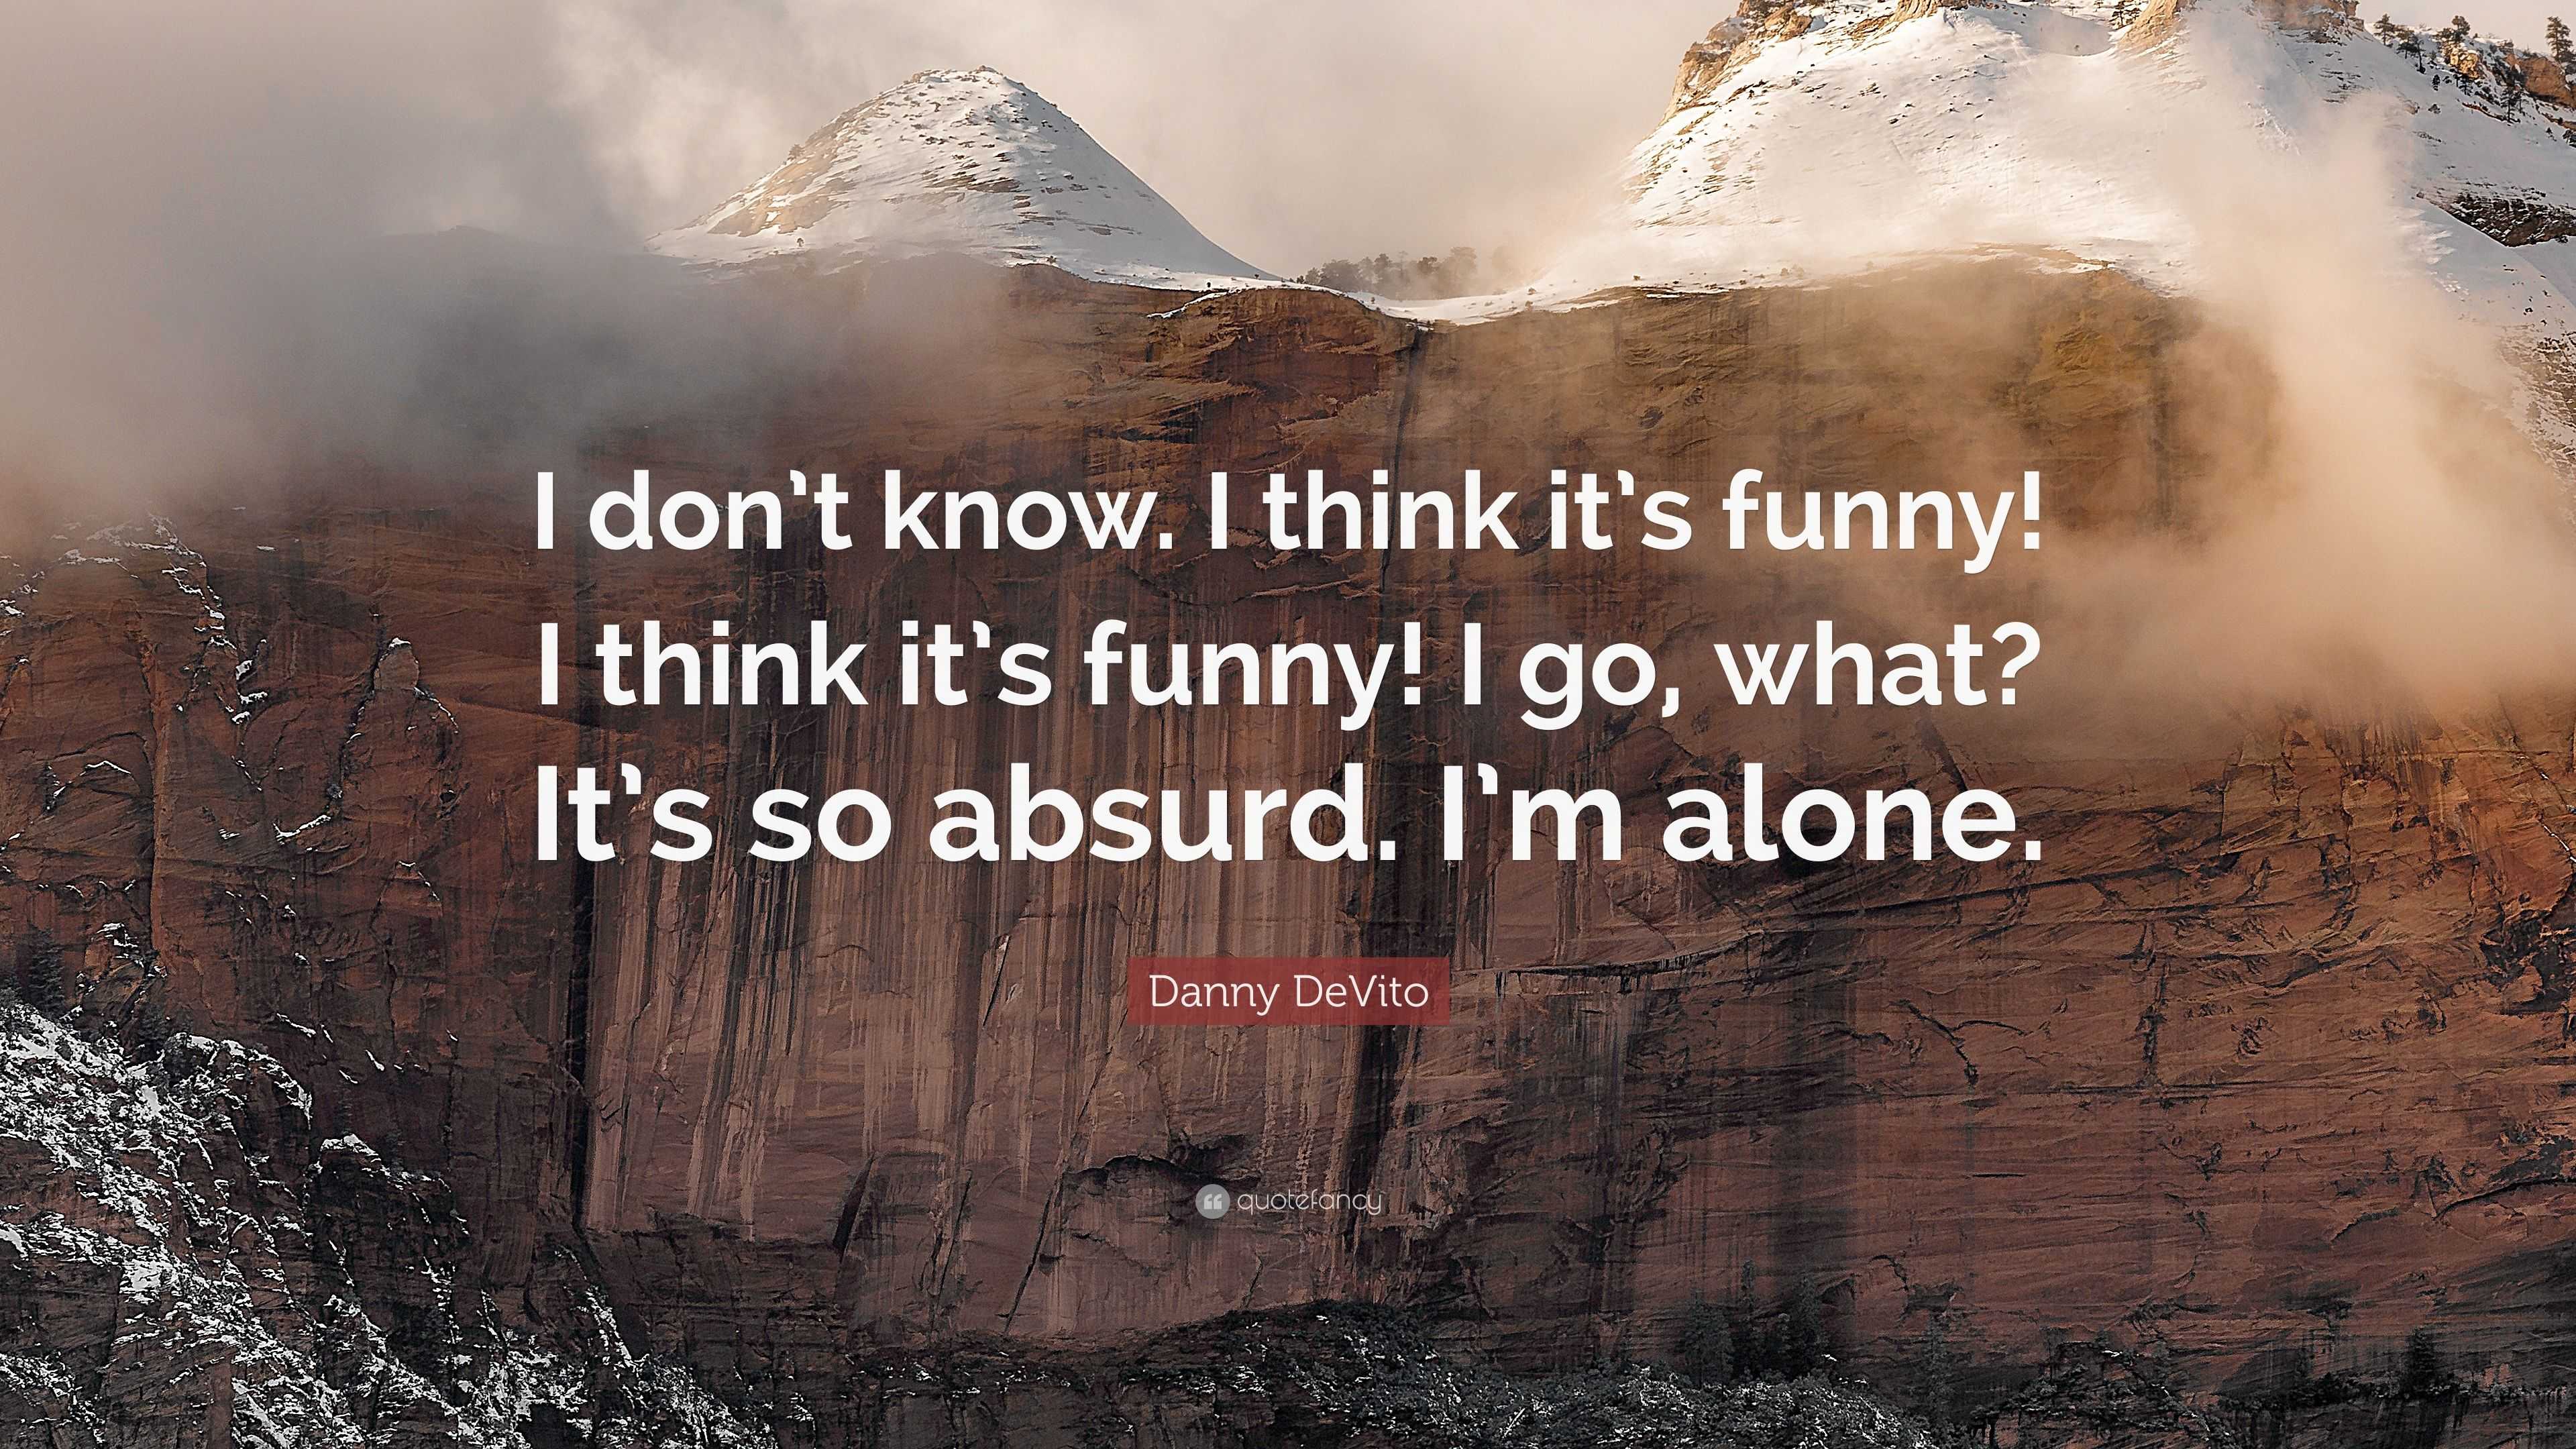 Danny DeVito Quote: “I don't know. I think it's funny! I think it's funny! I